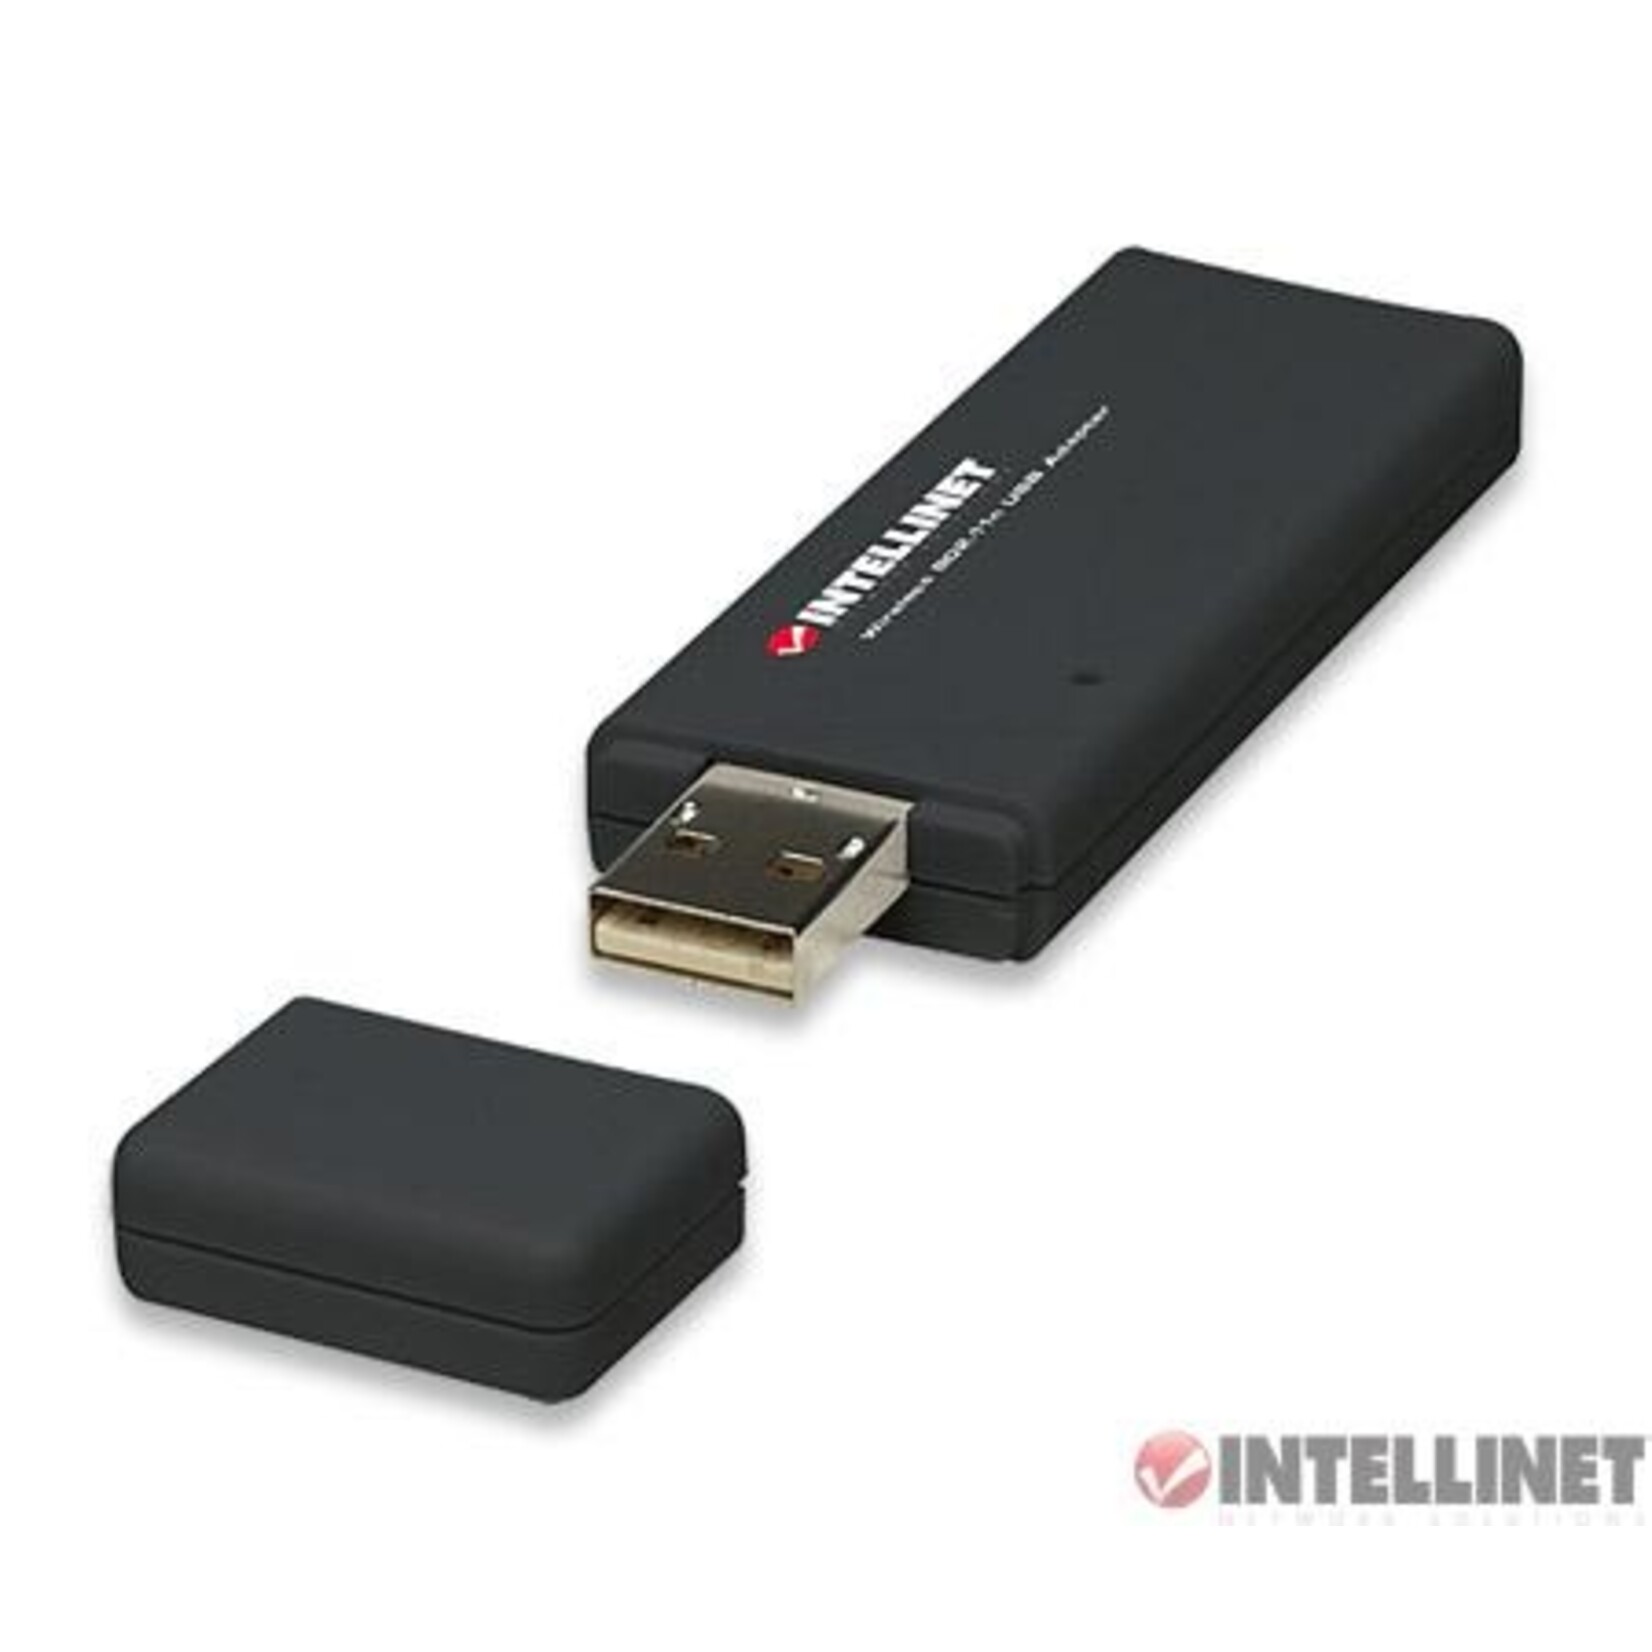 Intellinet Intellinet 150Mbs USB Wireless